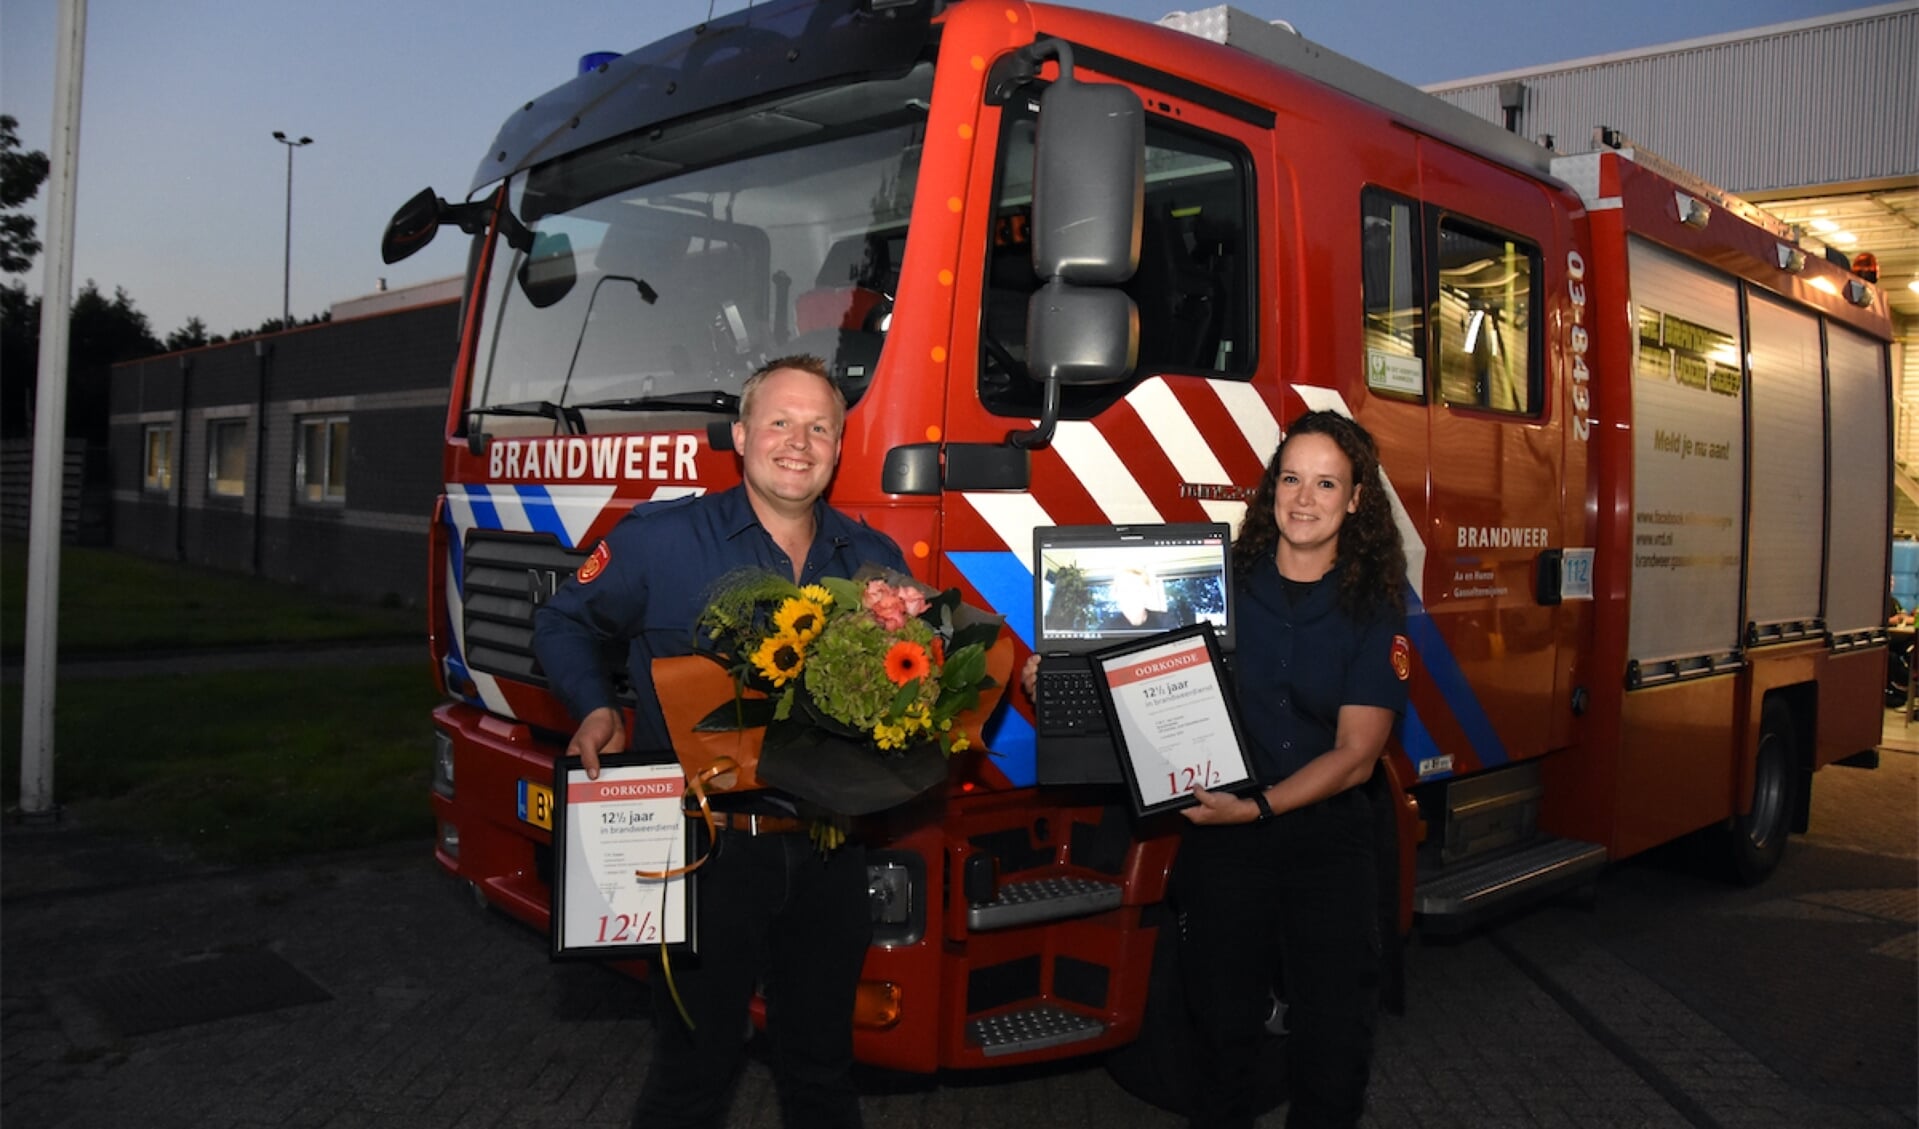 Henri Eissen en Francien van Vooren zijn beiden 12,5 jaar in dienst bij de brandweer in Gasselternijveen. (foto: Arjen Kuiper)